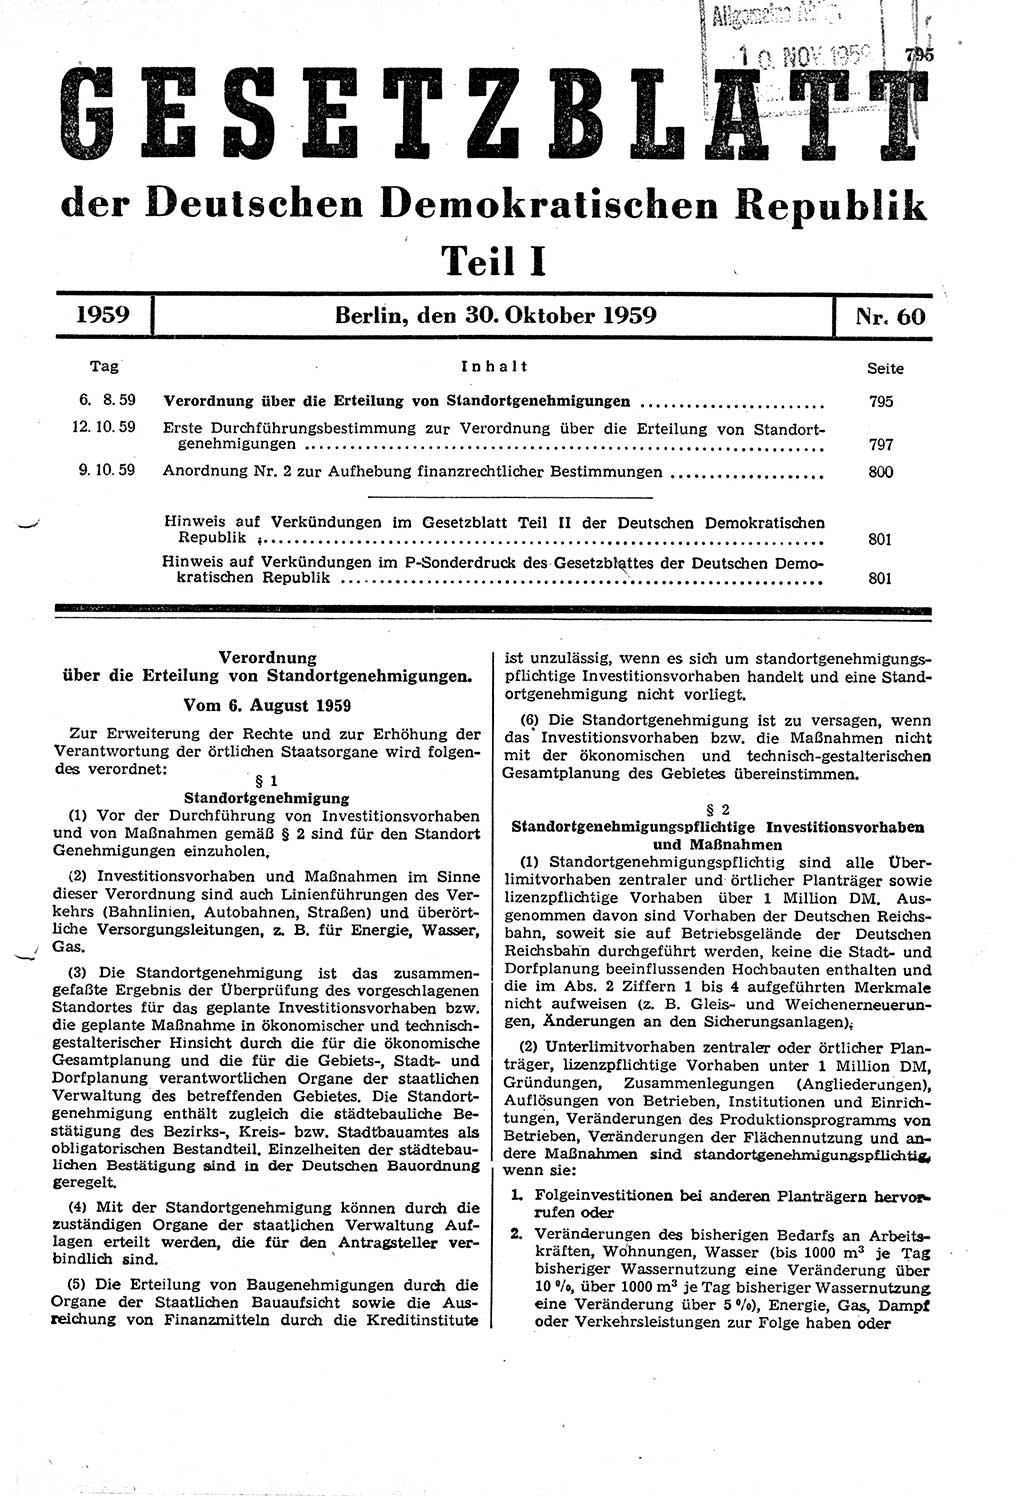 Gesetzblatt (GBl.) der Deutschen Demokratischen Republik (DDR) Teil Ⅰ 1959, Seite 795 (GBl. DDR Ⅰ 1959, S. 795)